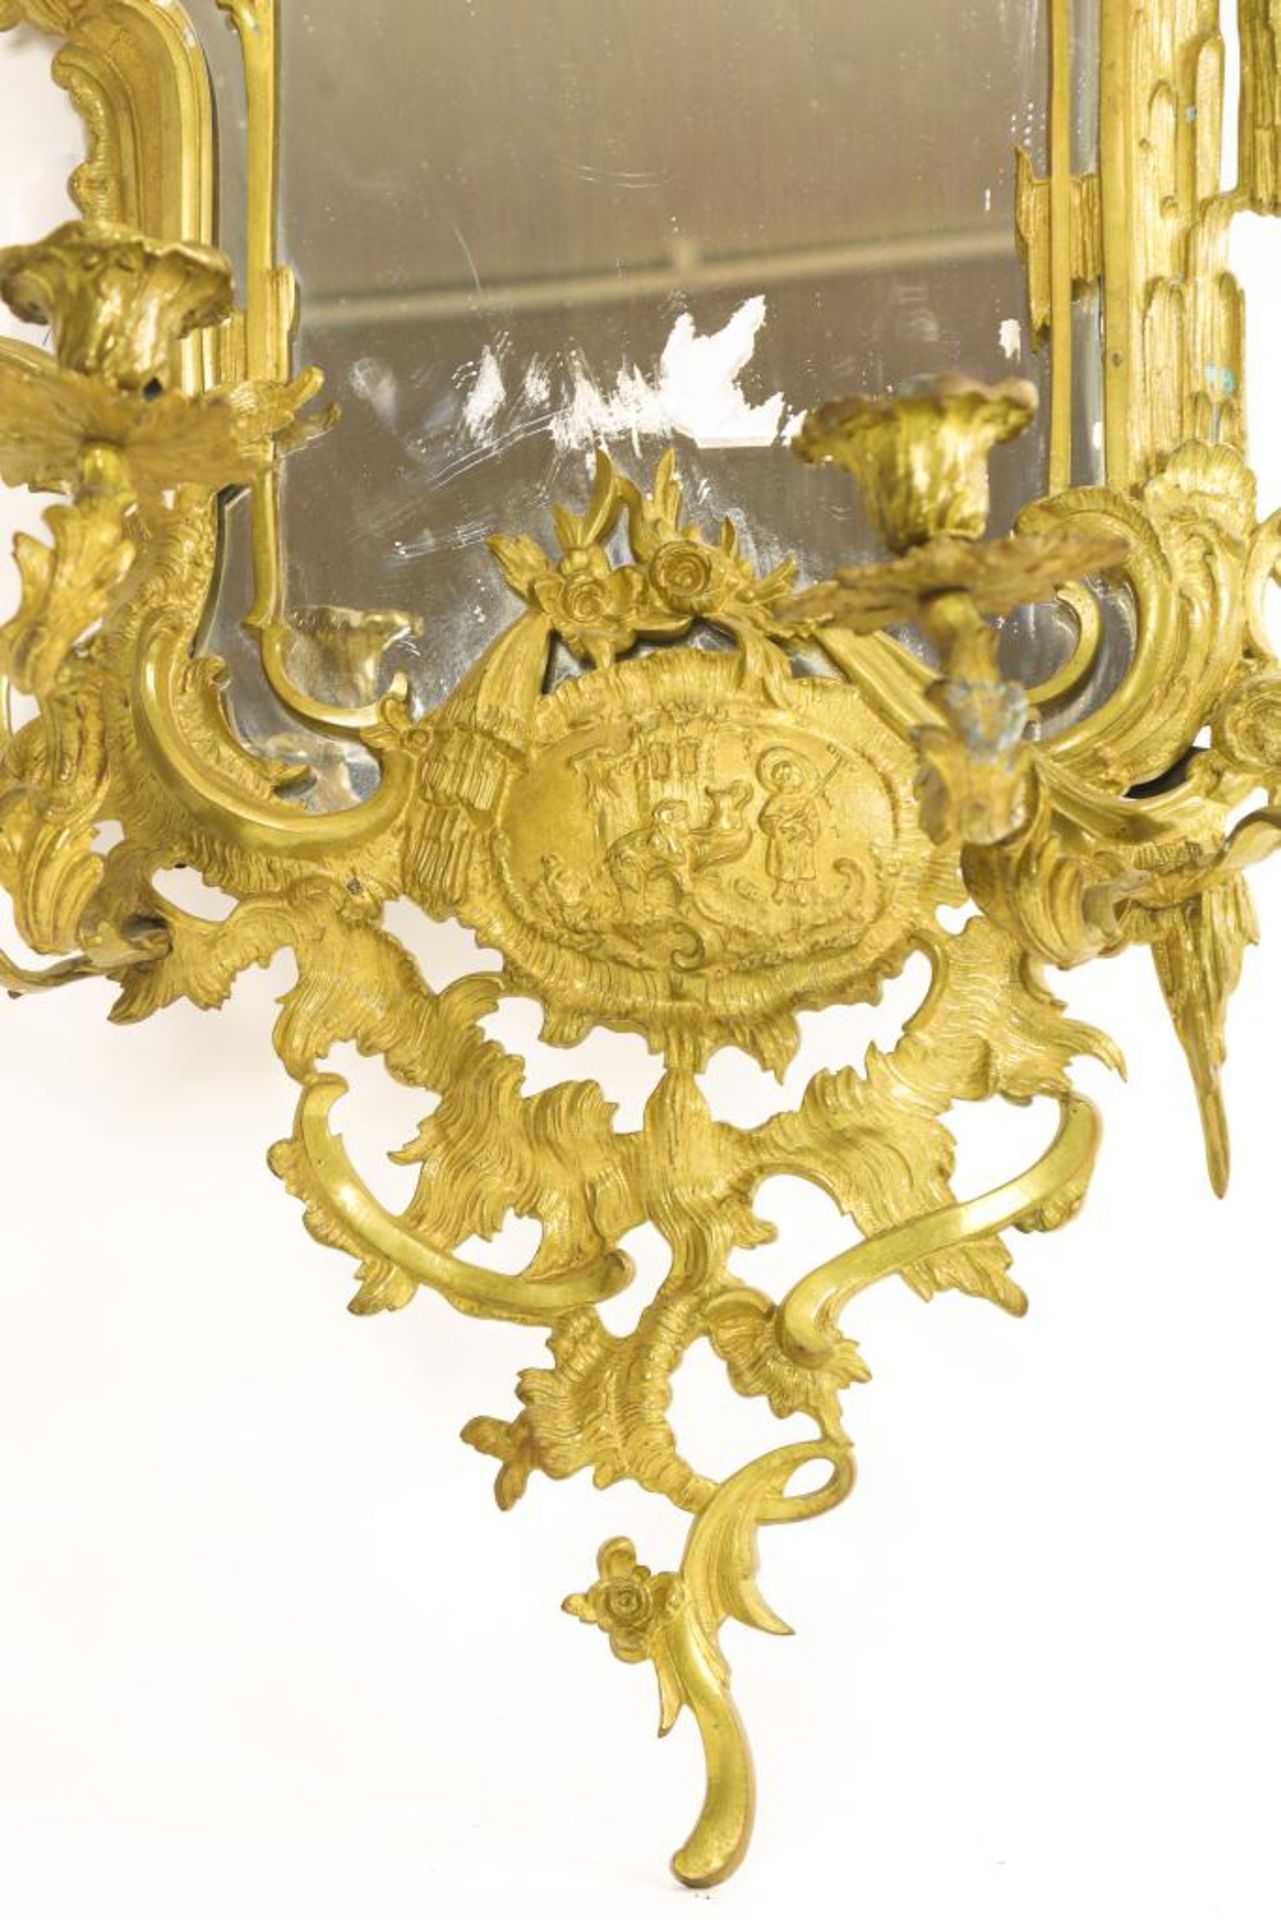 Bronzen Louis XV-stijl spiegel - Bild 5 aus 5